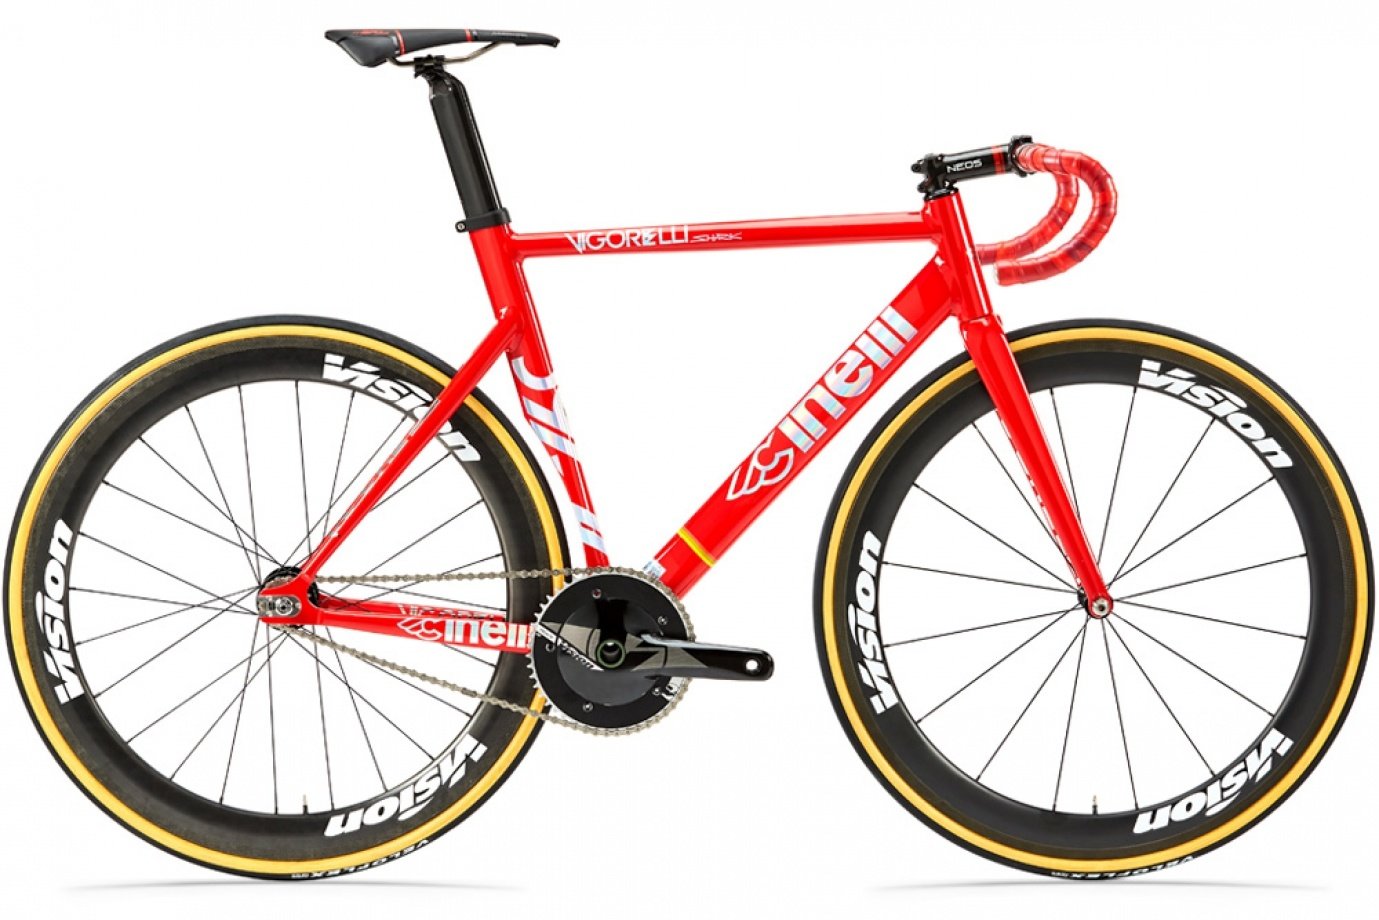 Červené sportovní aerodynamické singlespeed kolo značky Cinelli s jedinou rychlostí, sportovním sedlem a zahnutými sportovními řidítky.